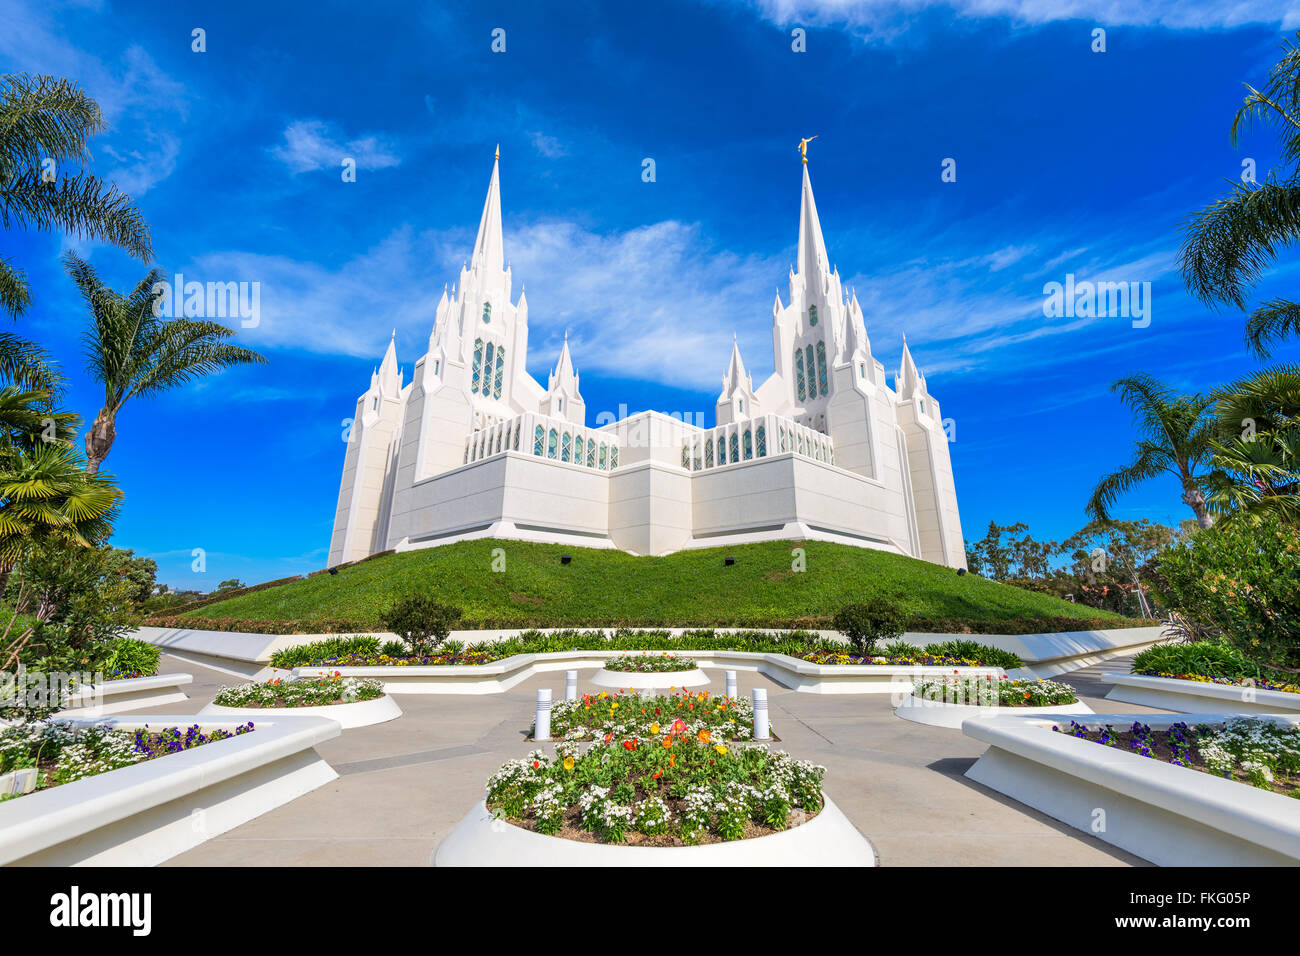 San Diego, California at San Diego California Mormon Temple. Stock Photo